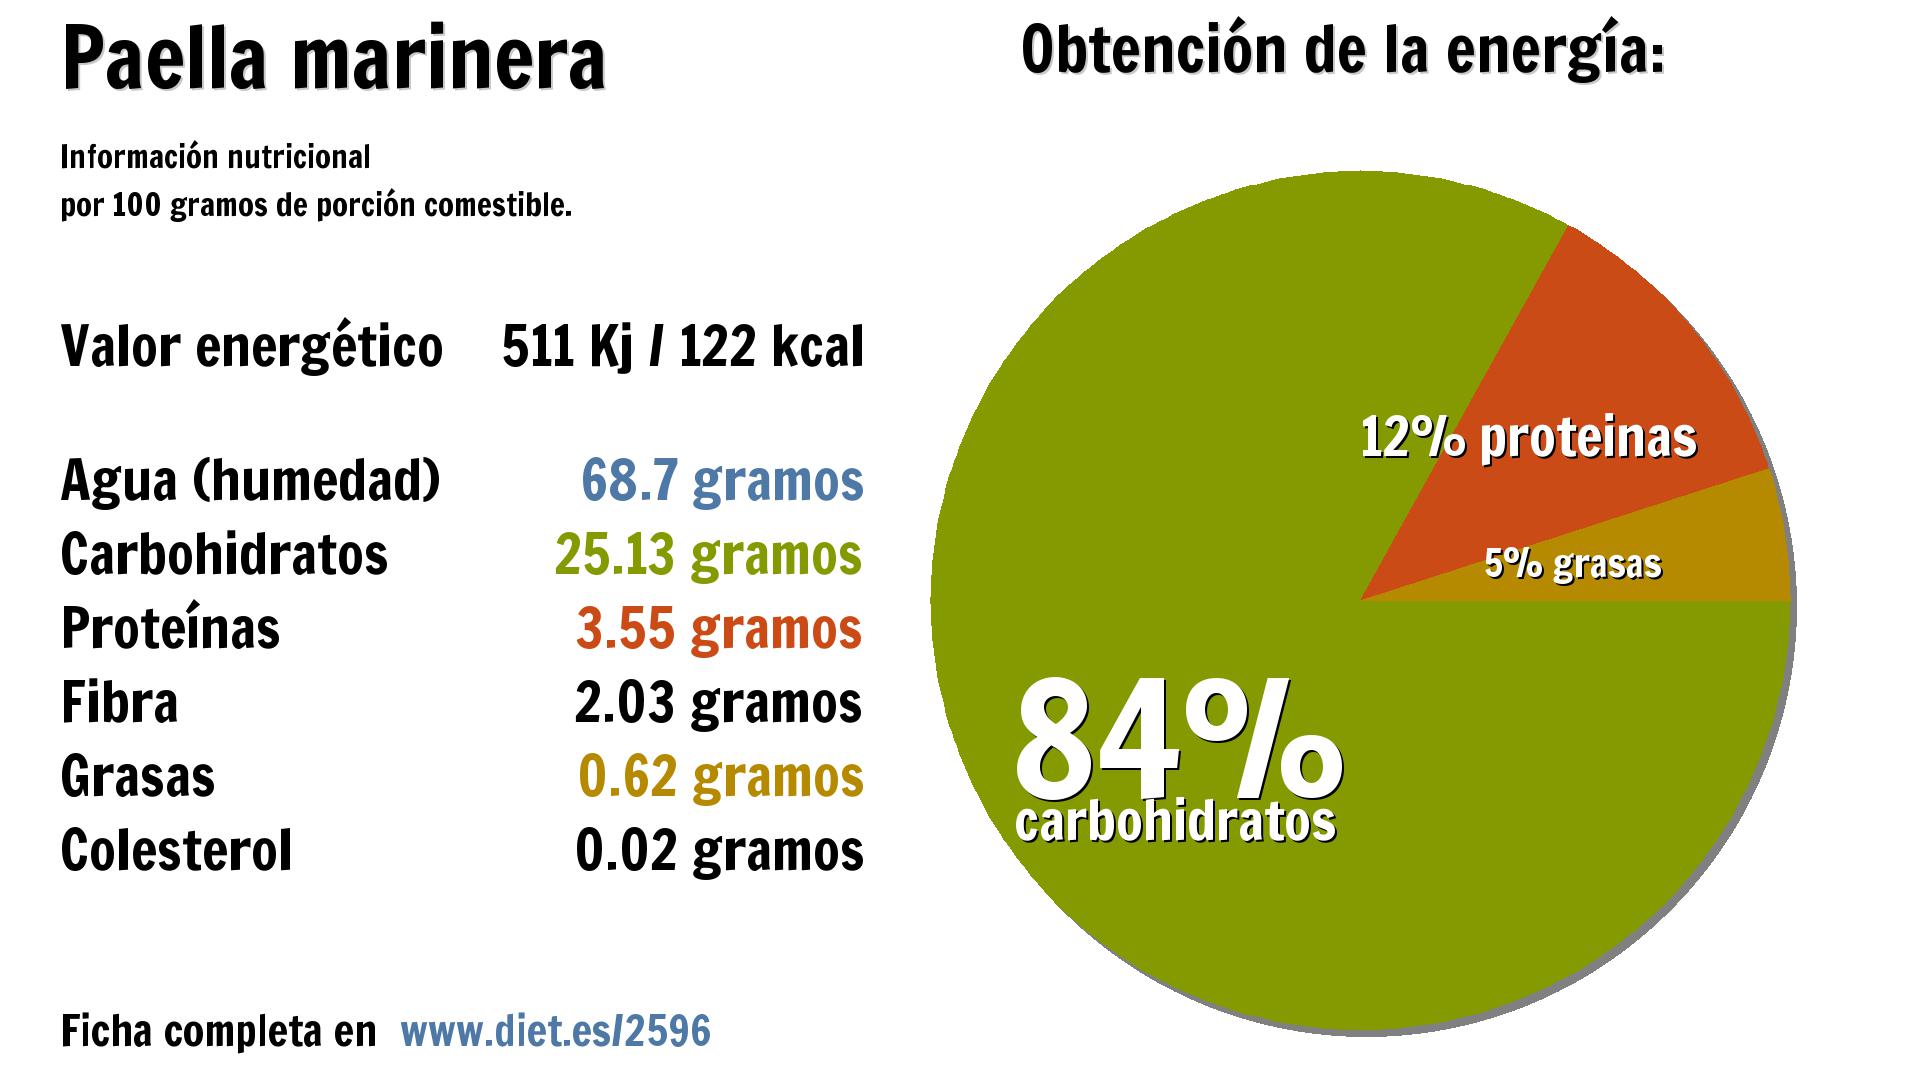 Paella marinera: energía 511 Kj, agua 69 g., carbohidratos 25 g., proteínas 4 g., fibra 2 g. y grasas 1 g.